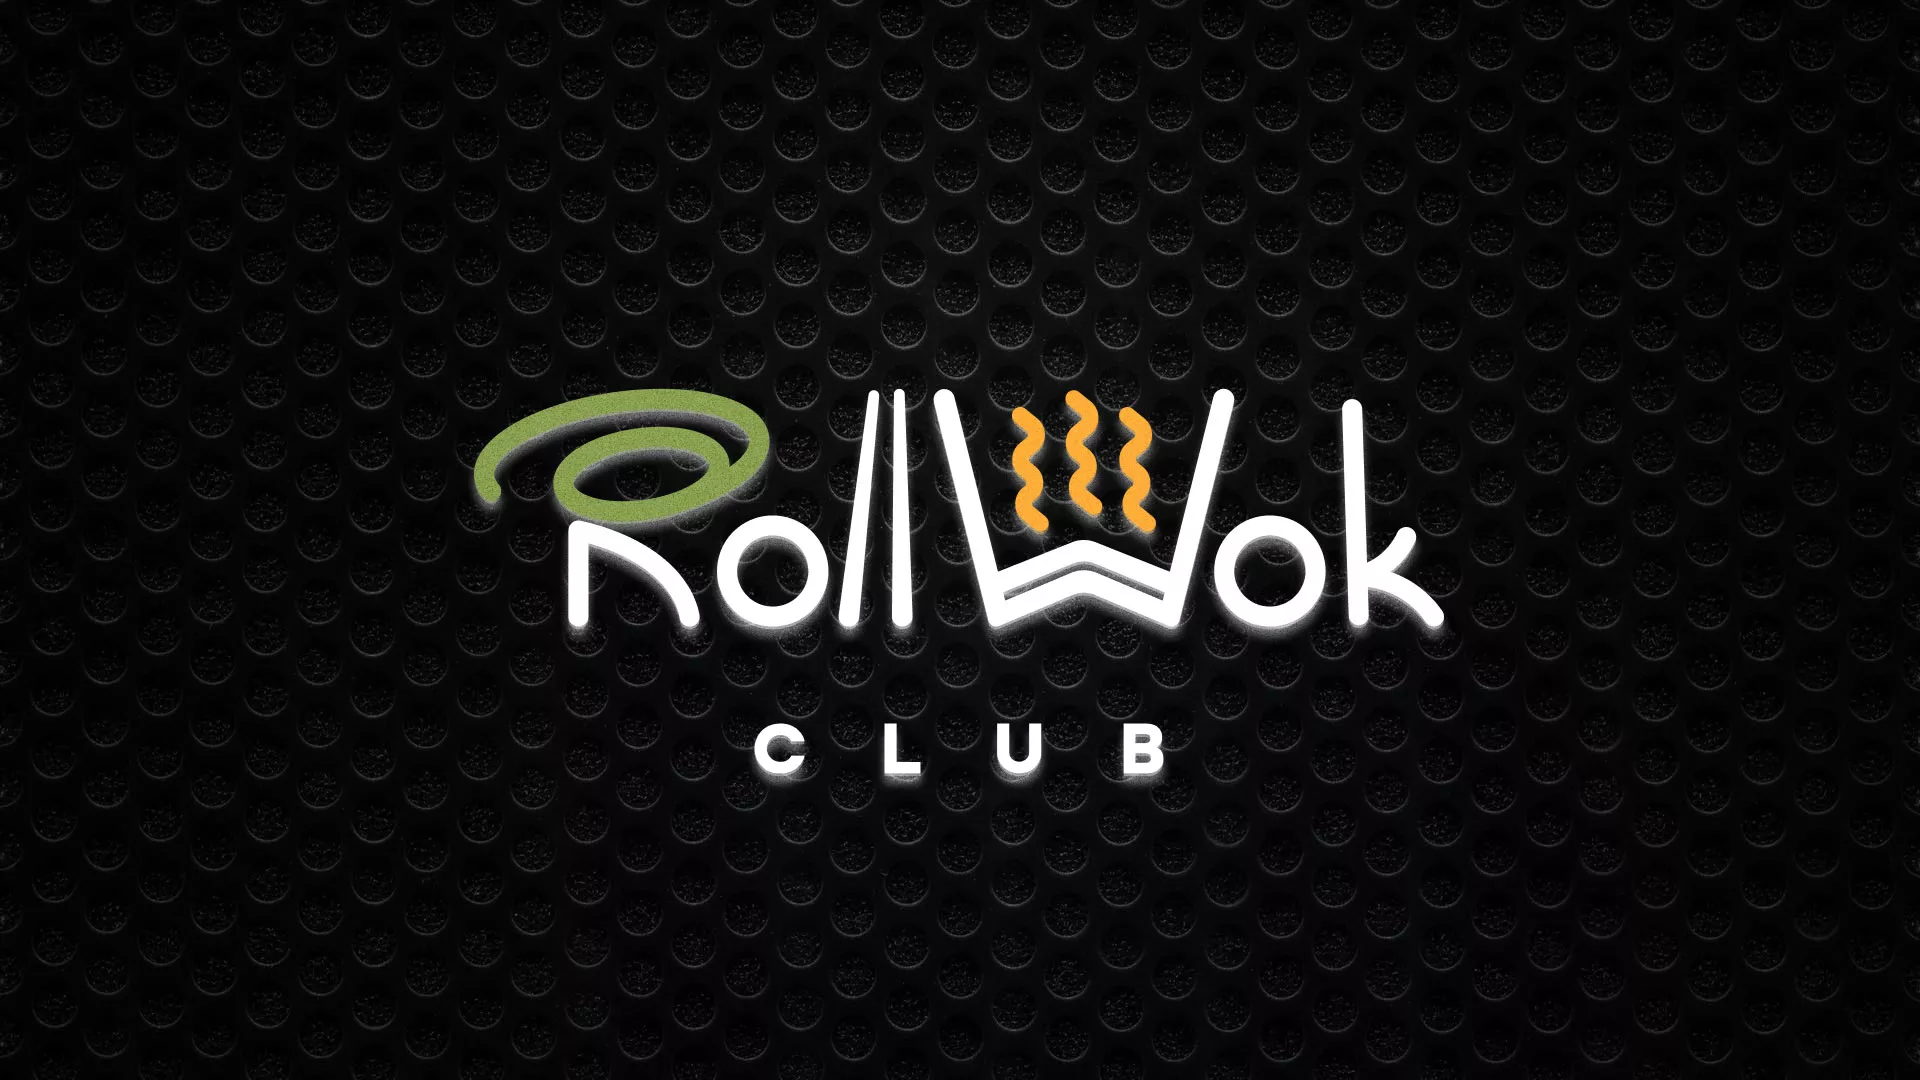 Брендирование торговых точек суши-бара «Roll Wok Club» в Новом Осколе